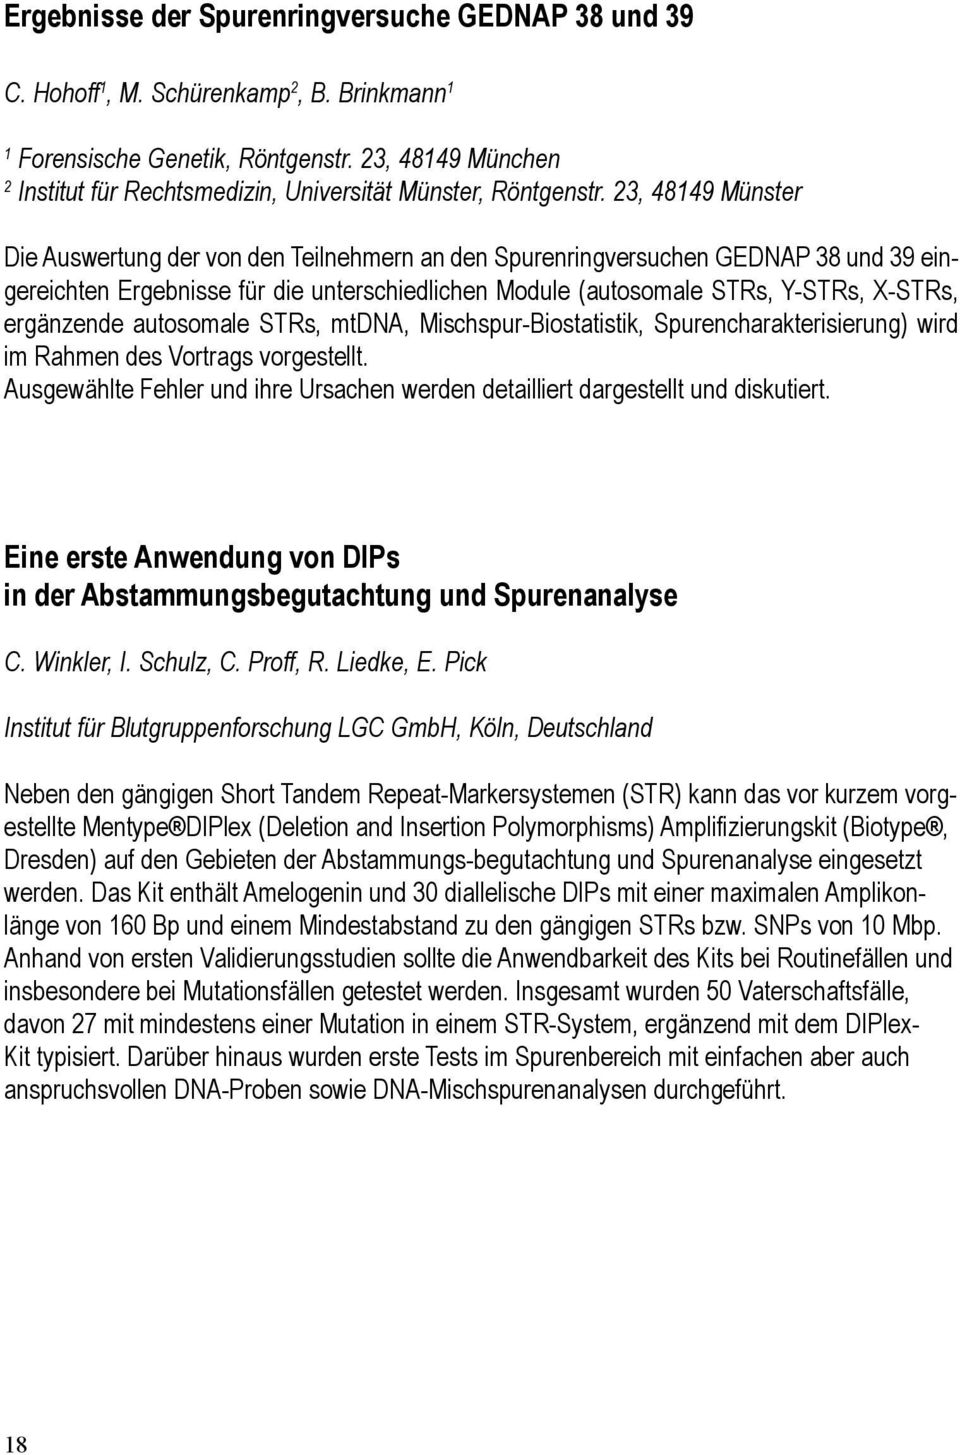 23, 48149 Münster Die Auswertung der von den Teilnehmern an den Spurenringversuchen GEDNAP 38 und 39 eingereichten Ergebnisse für die unterschiedlichen Module (autosomale STRs, Y-STRs, X-STRs,